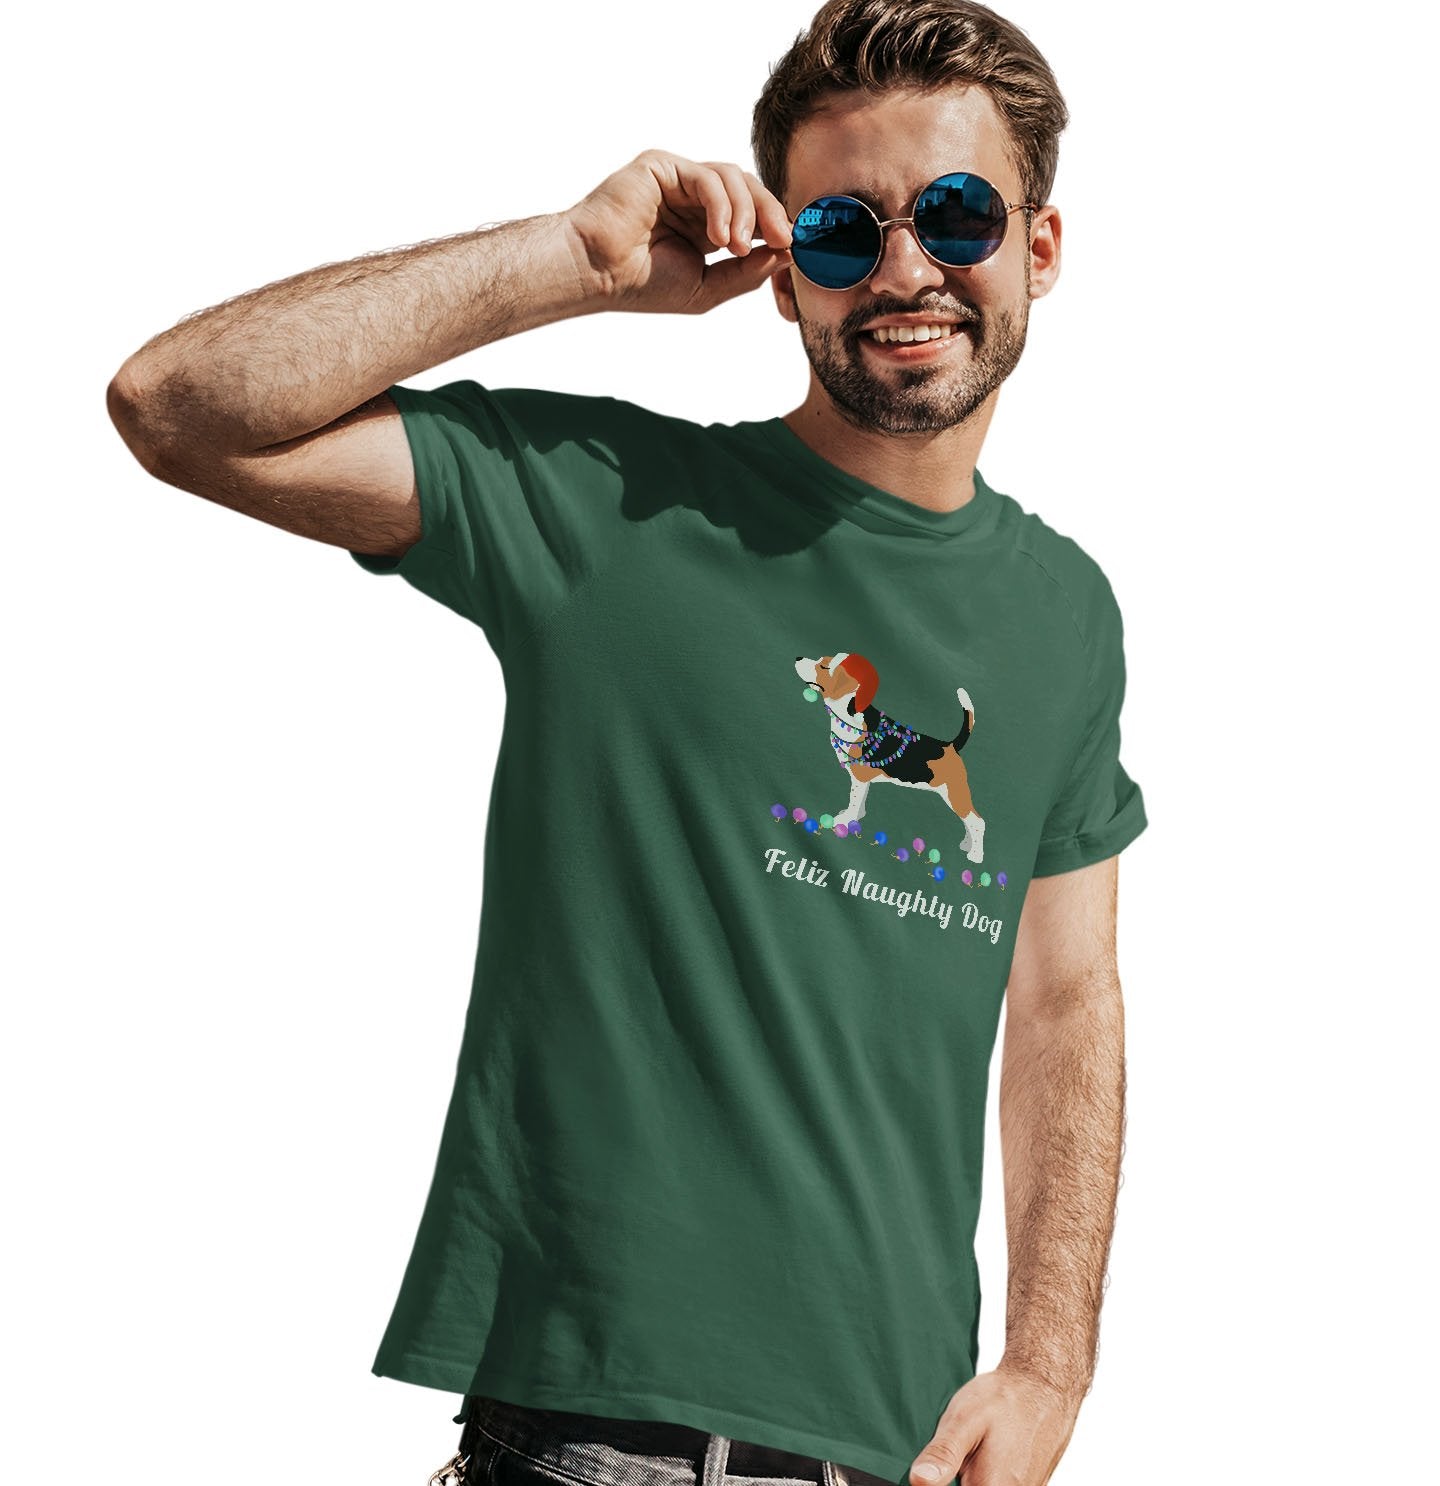 Feliz Naughty Dog Beagle - Adult Unisex T-Shirt